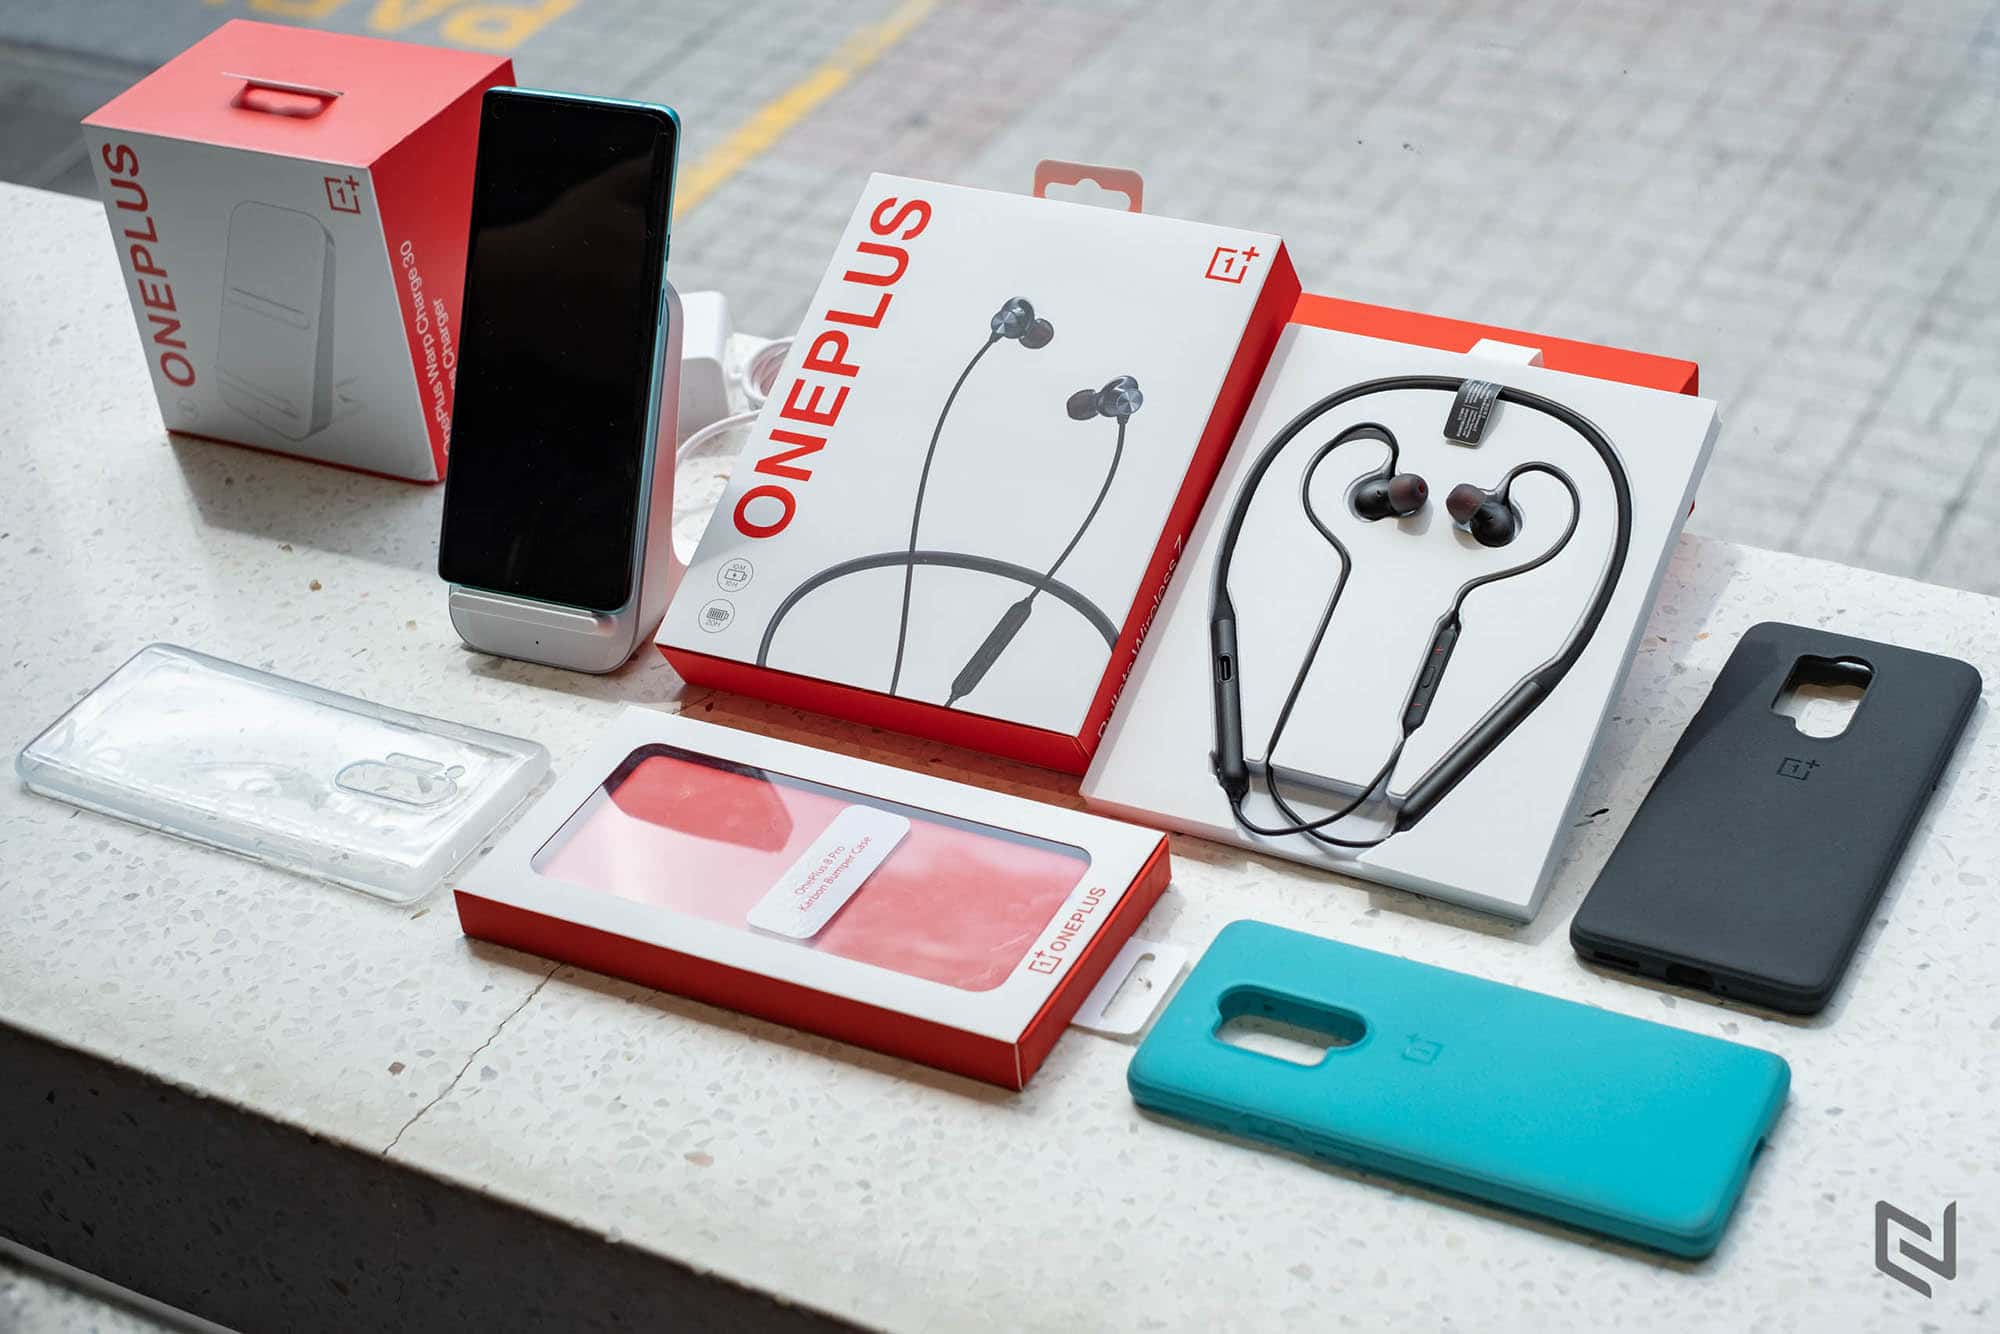 Tại sao bạn nên mua điện thoại OnePlus chính hãng thay vì xách tay